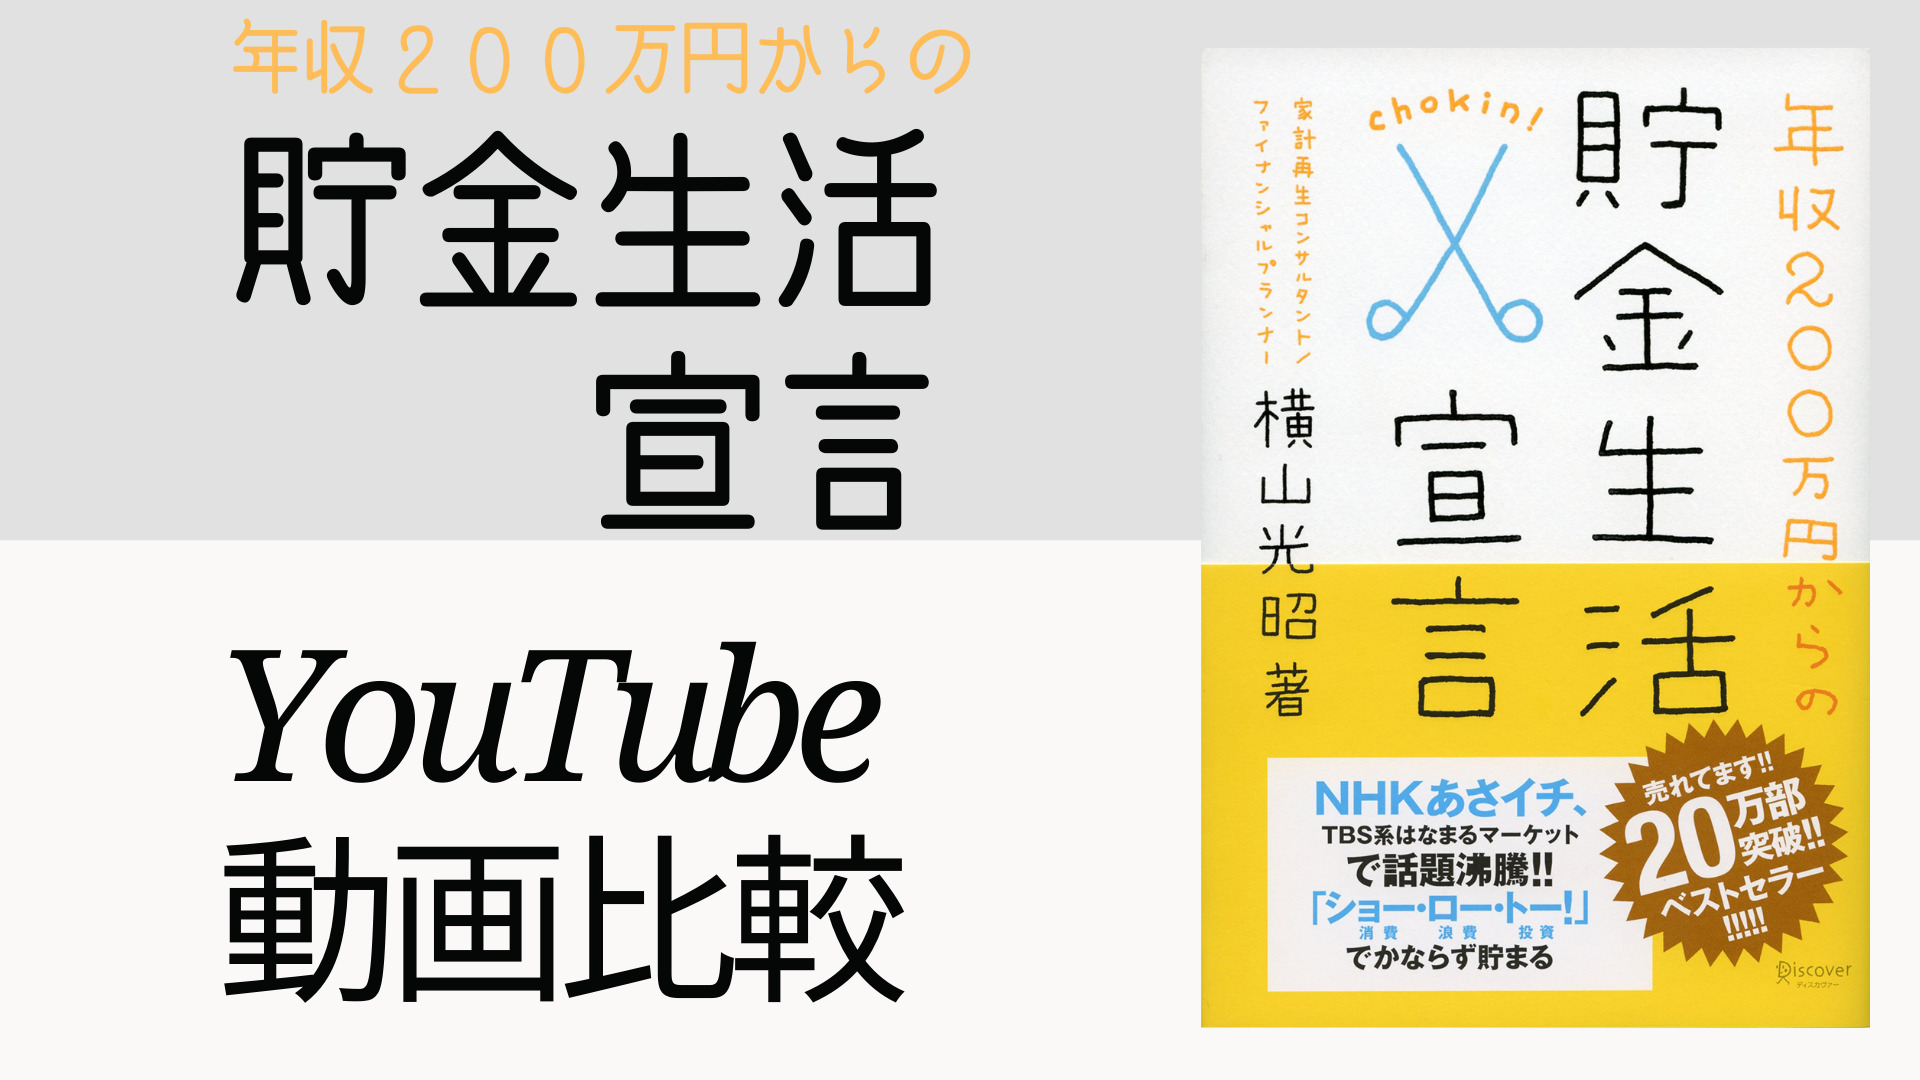 年収200万円からの貯金生活宣言 YouTube動画比較